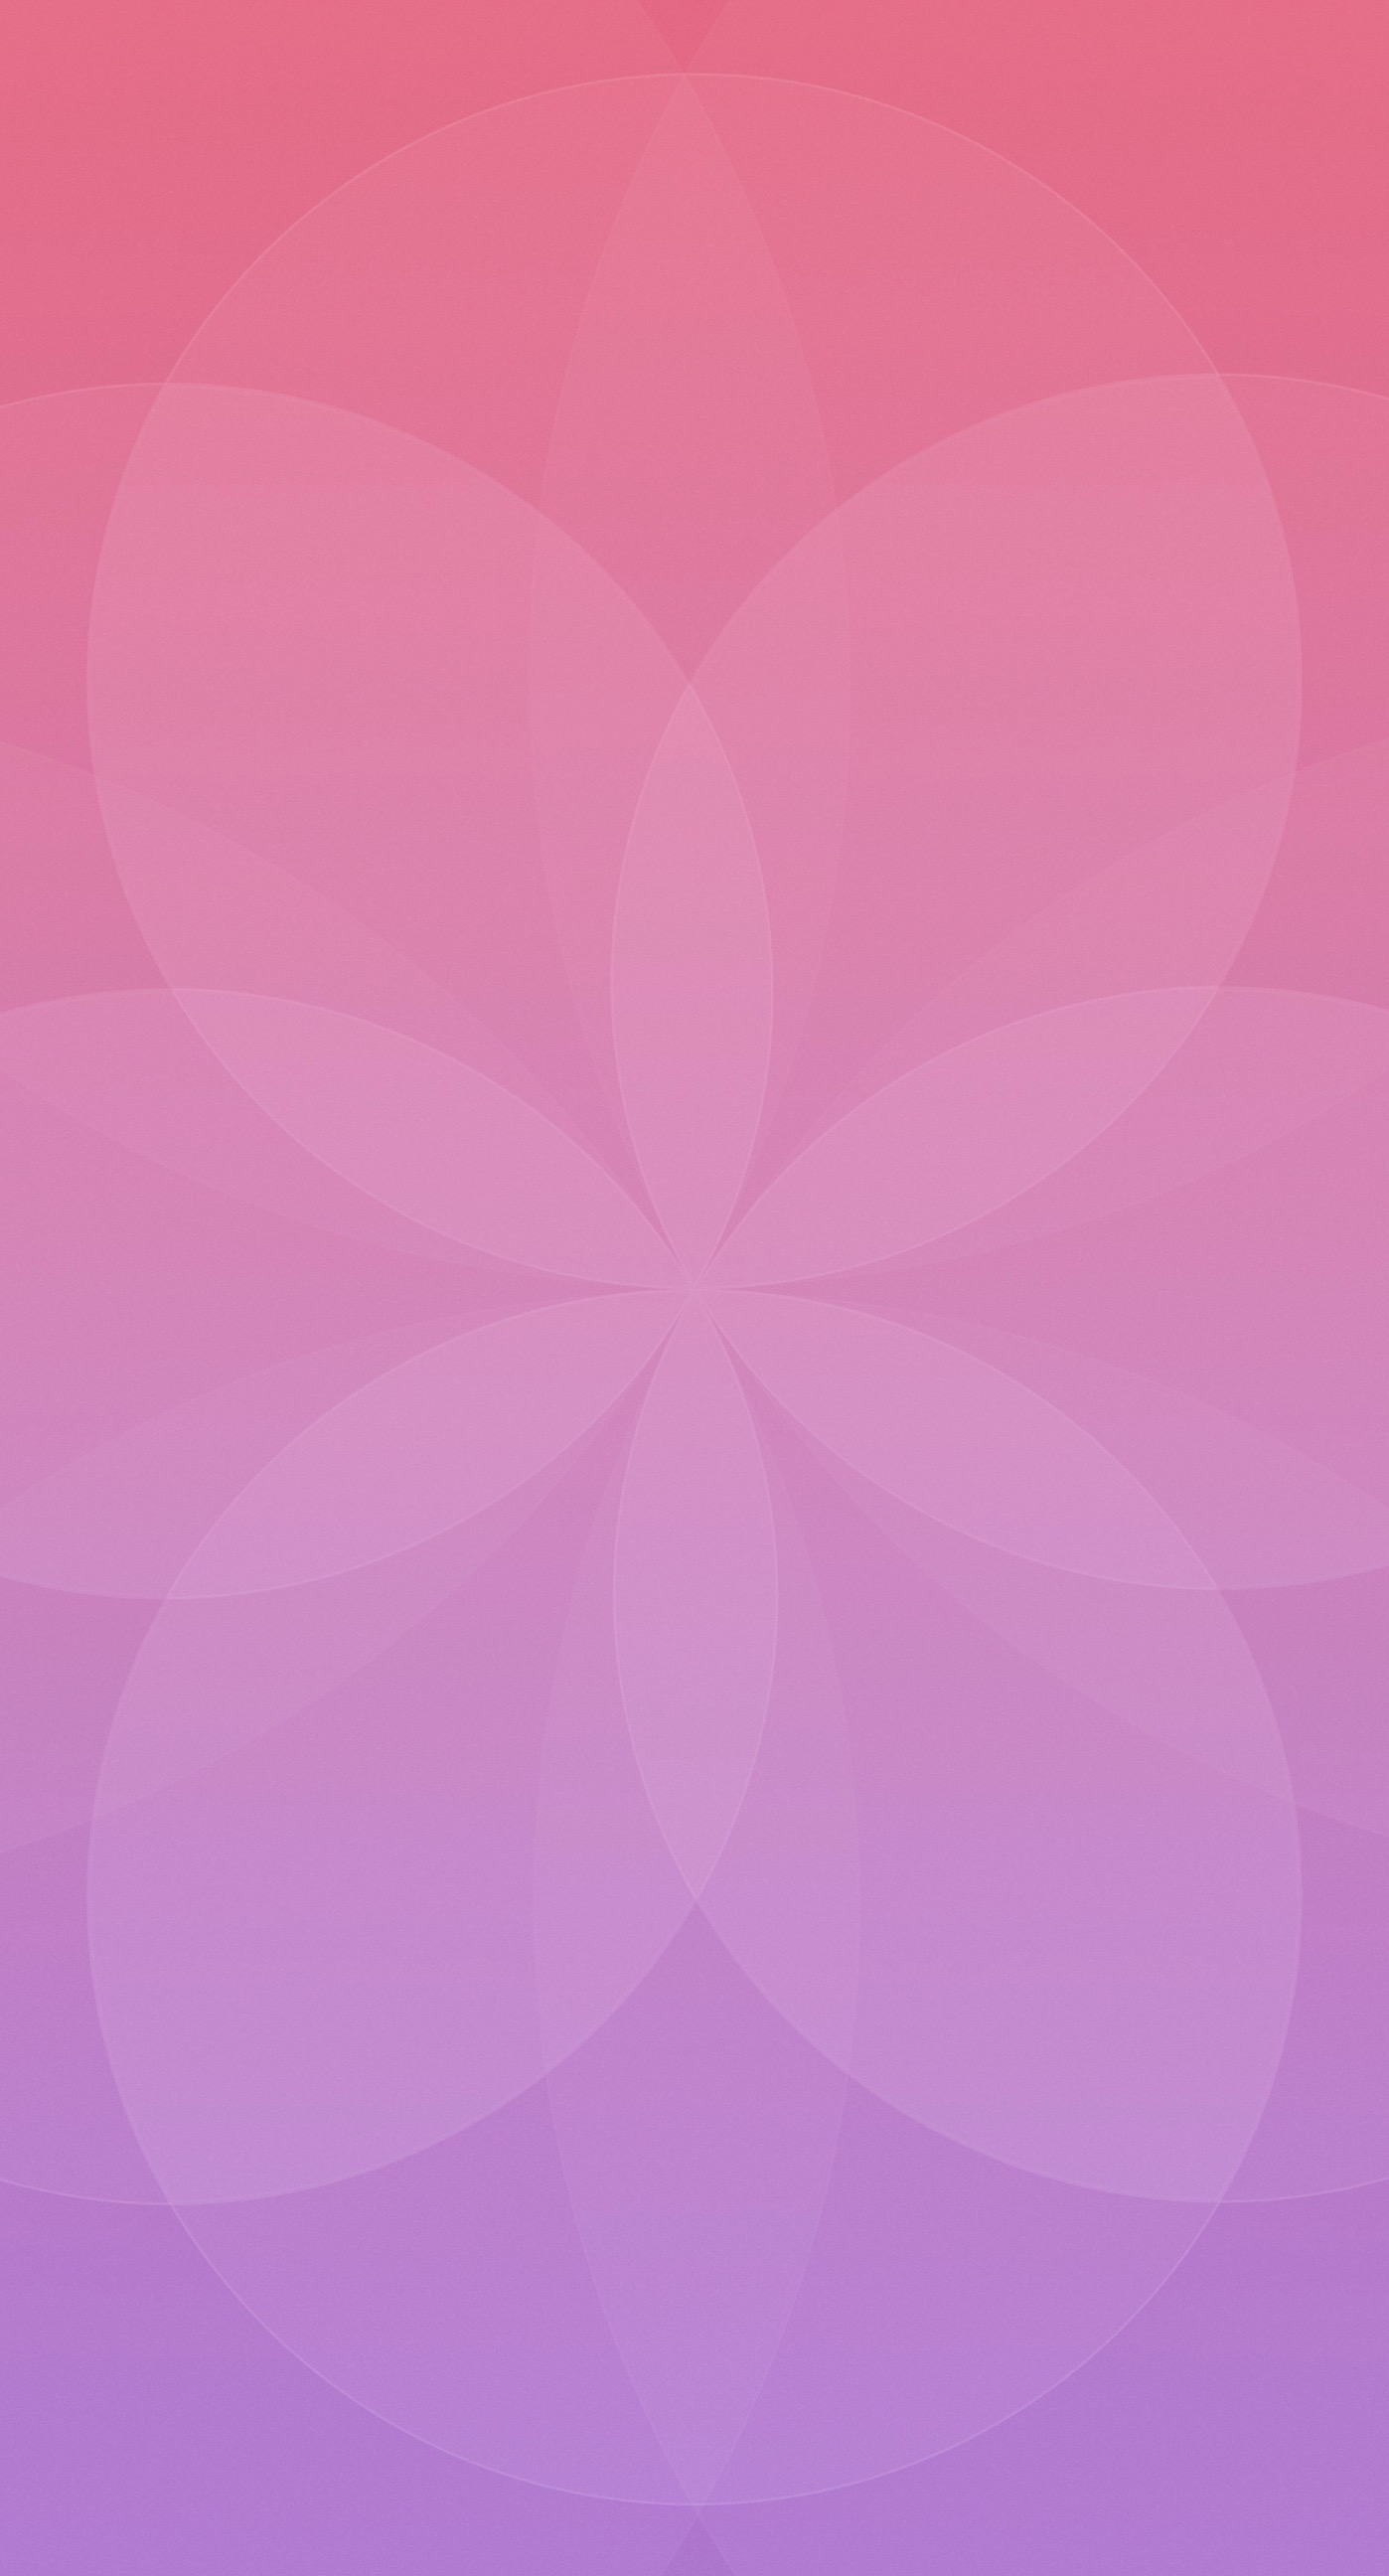 Với Pola dinding ungu merah cực kỳ hấp dẫn và nghệ thuật, bạn không thể bỏ lỡ cơ hội xem nó. Hãy tận hưởng trải nghiệm đầy màu sắc và sự phối hợp tuyệt vời của nó. 